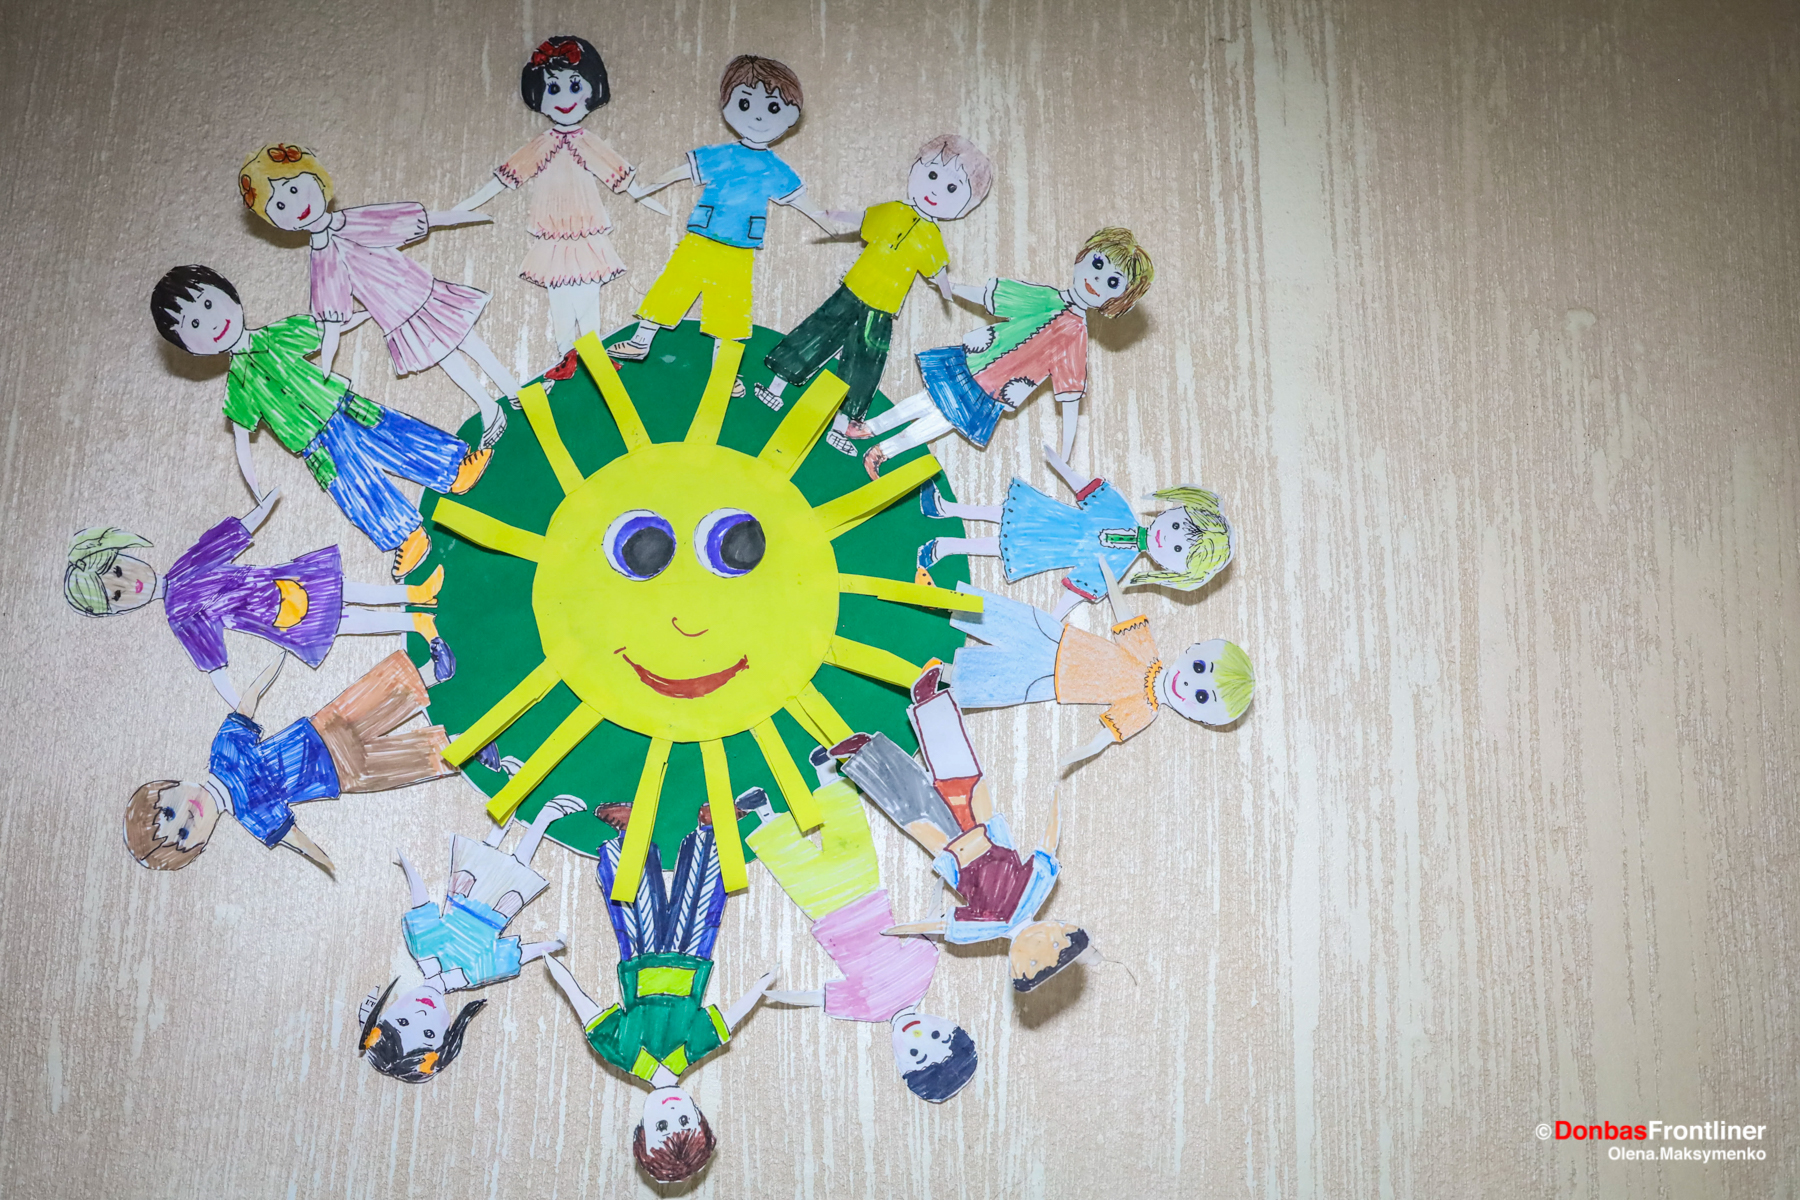 Donbas Frontliner / Виставка дитячих робіт
